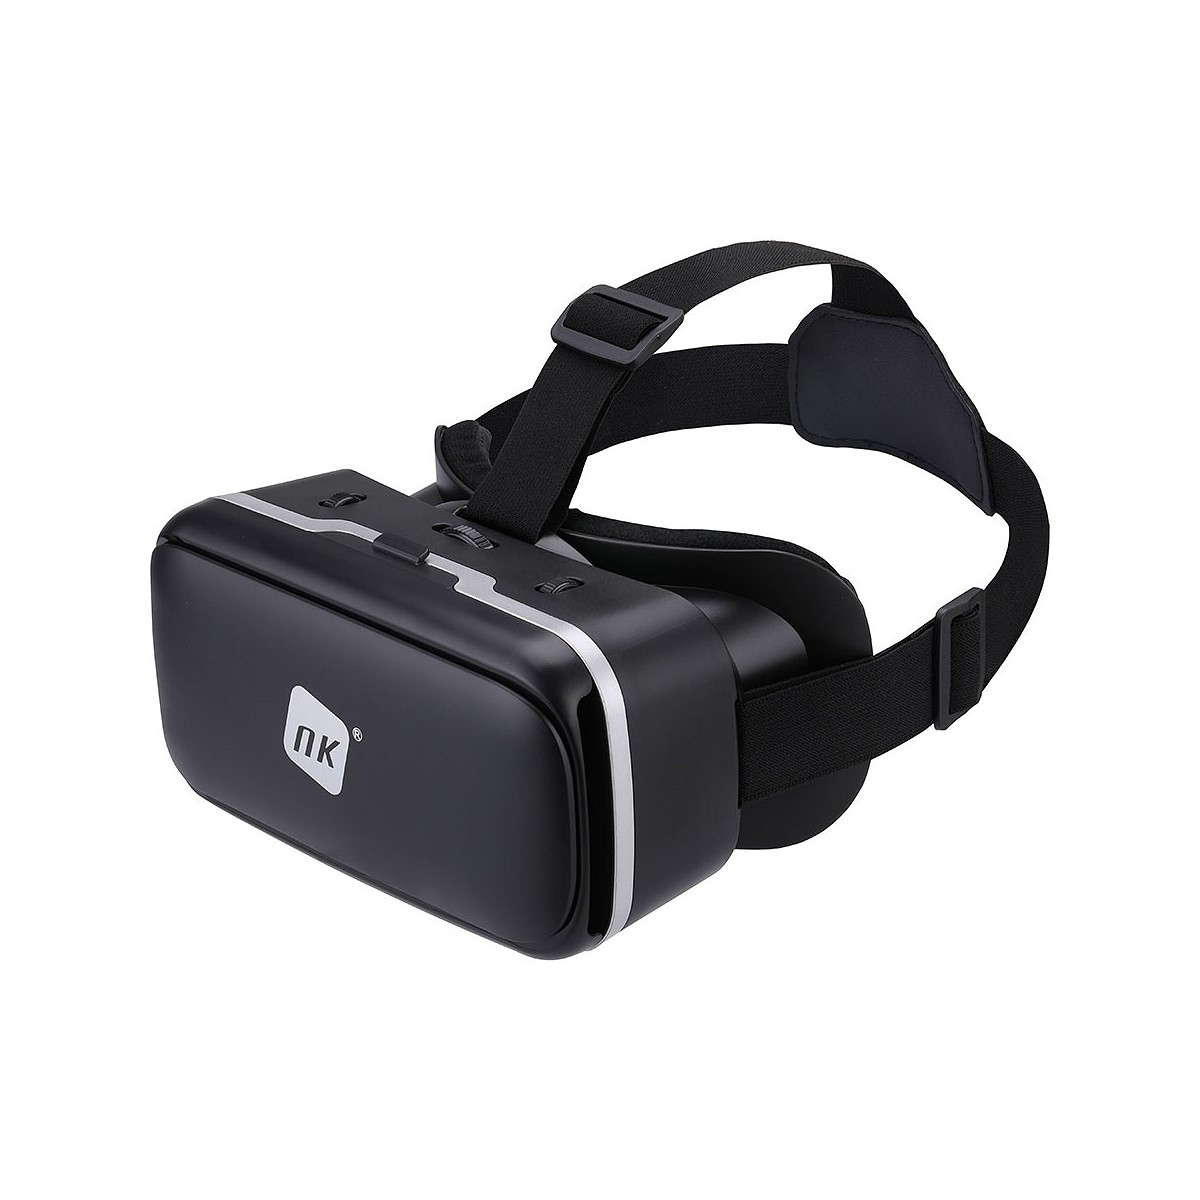 Gafas 3d de realidad virtual para smartphone nk